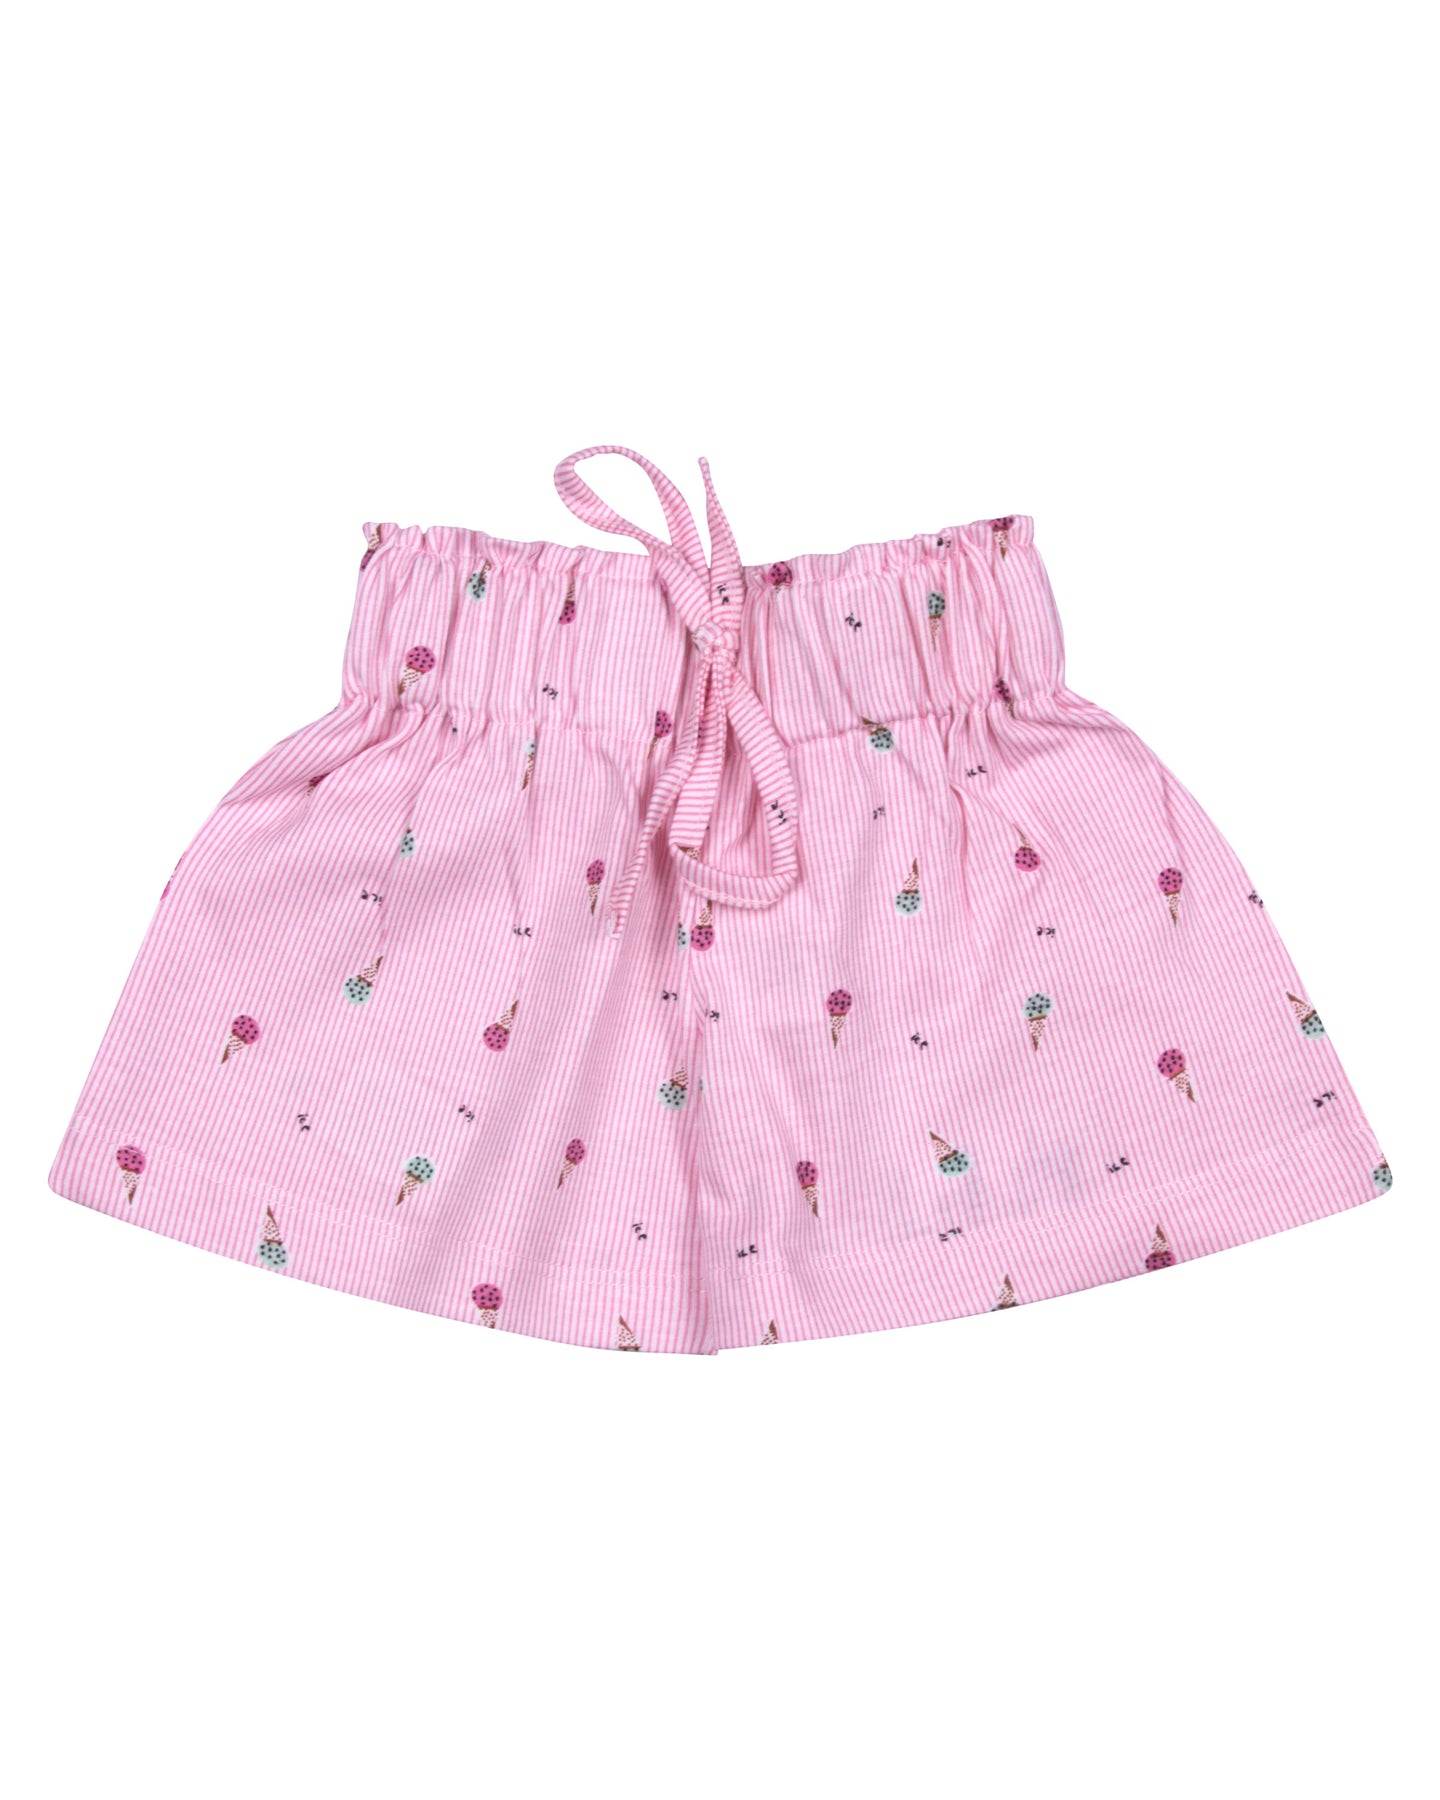 Girls Printed Cotton Pink Shorts